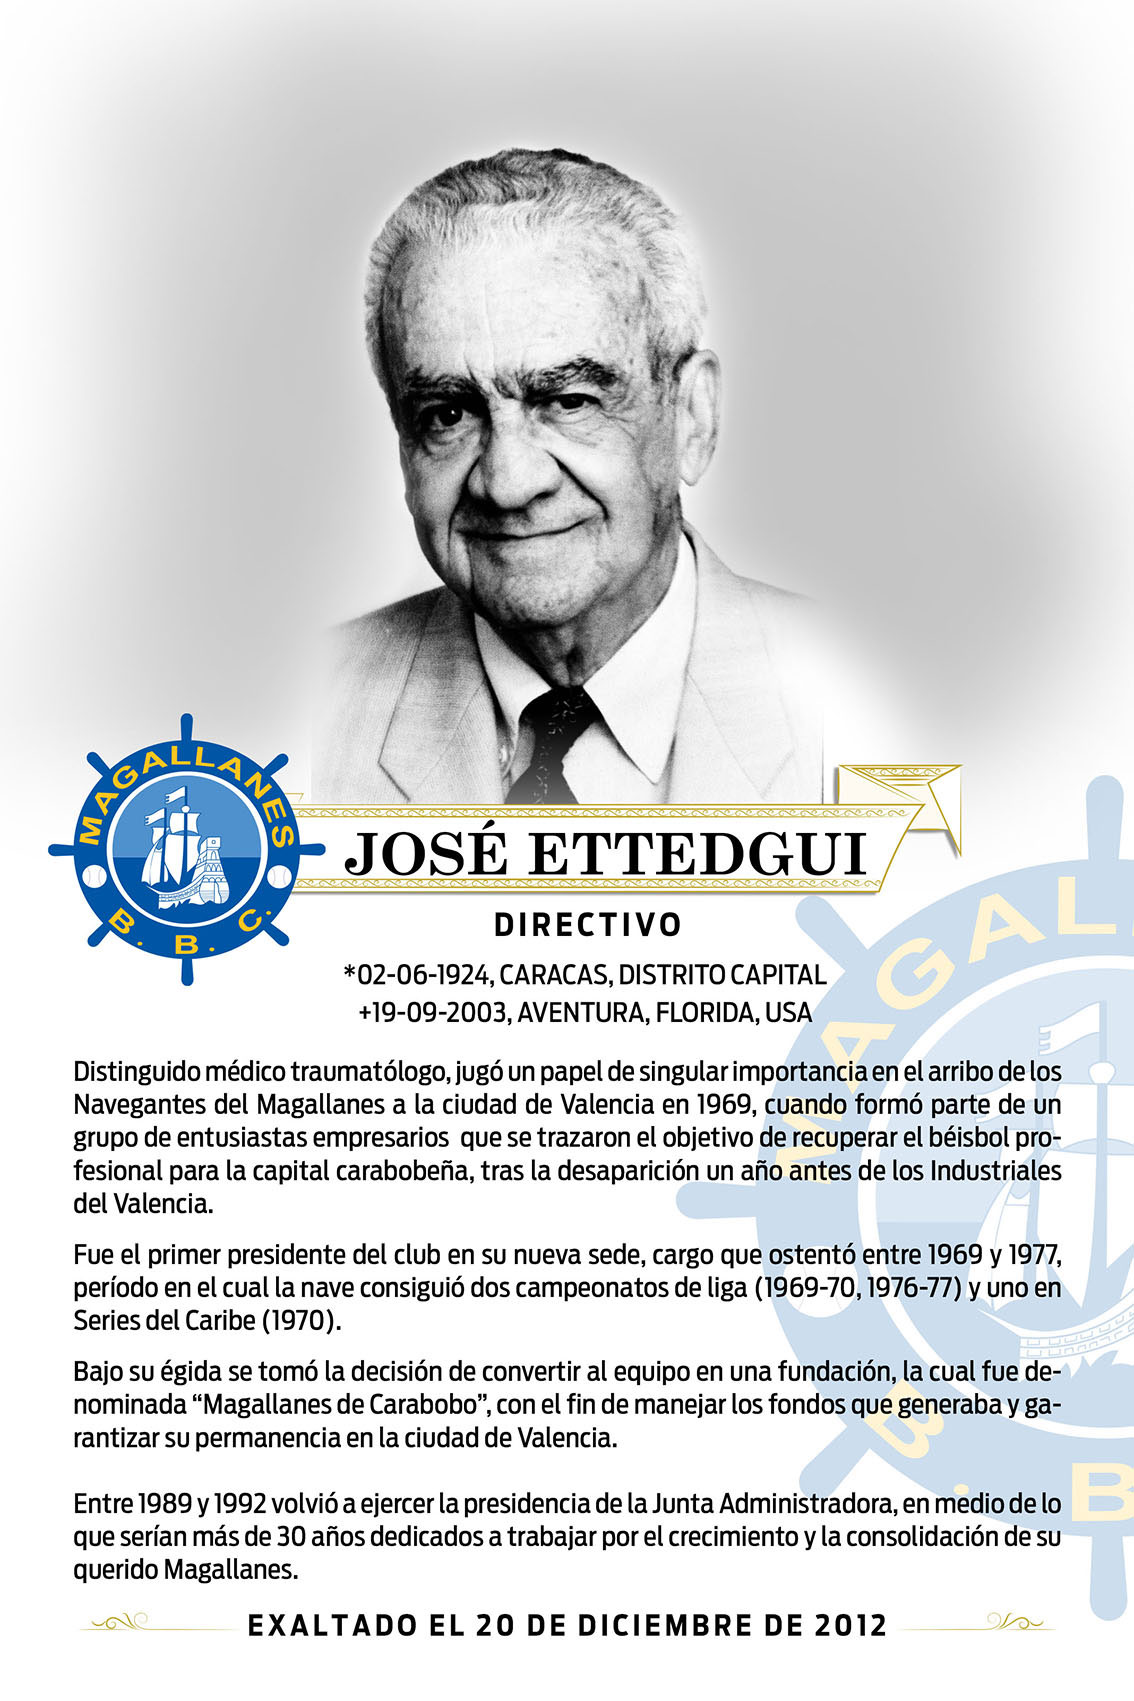 José Ettedgui